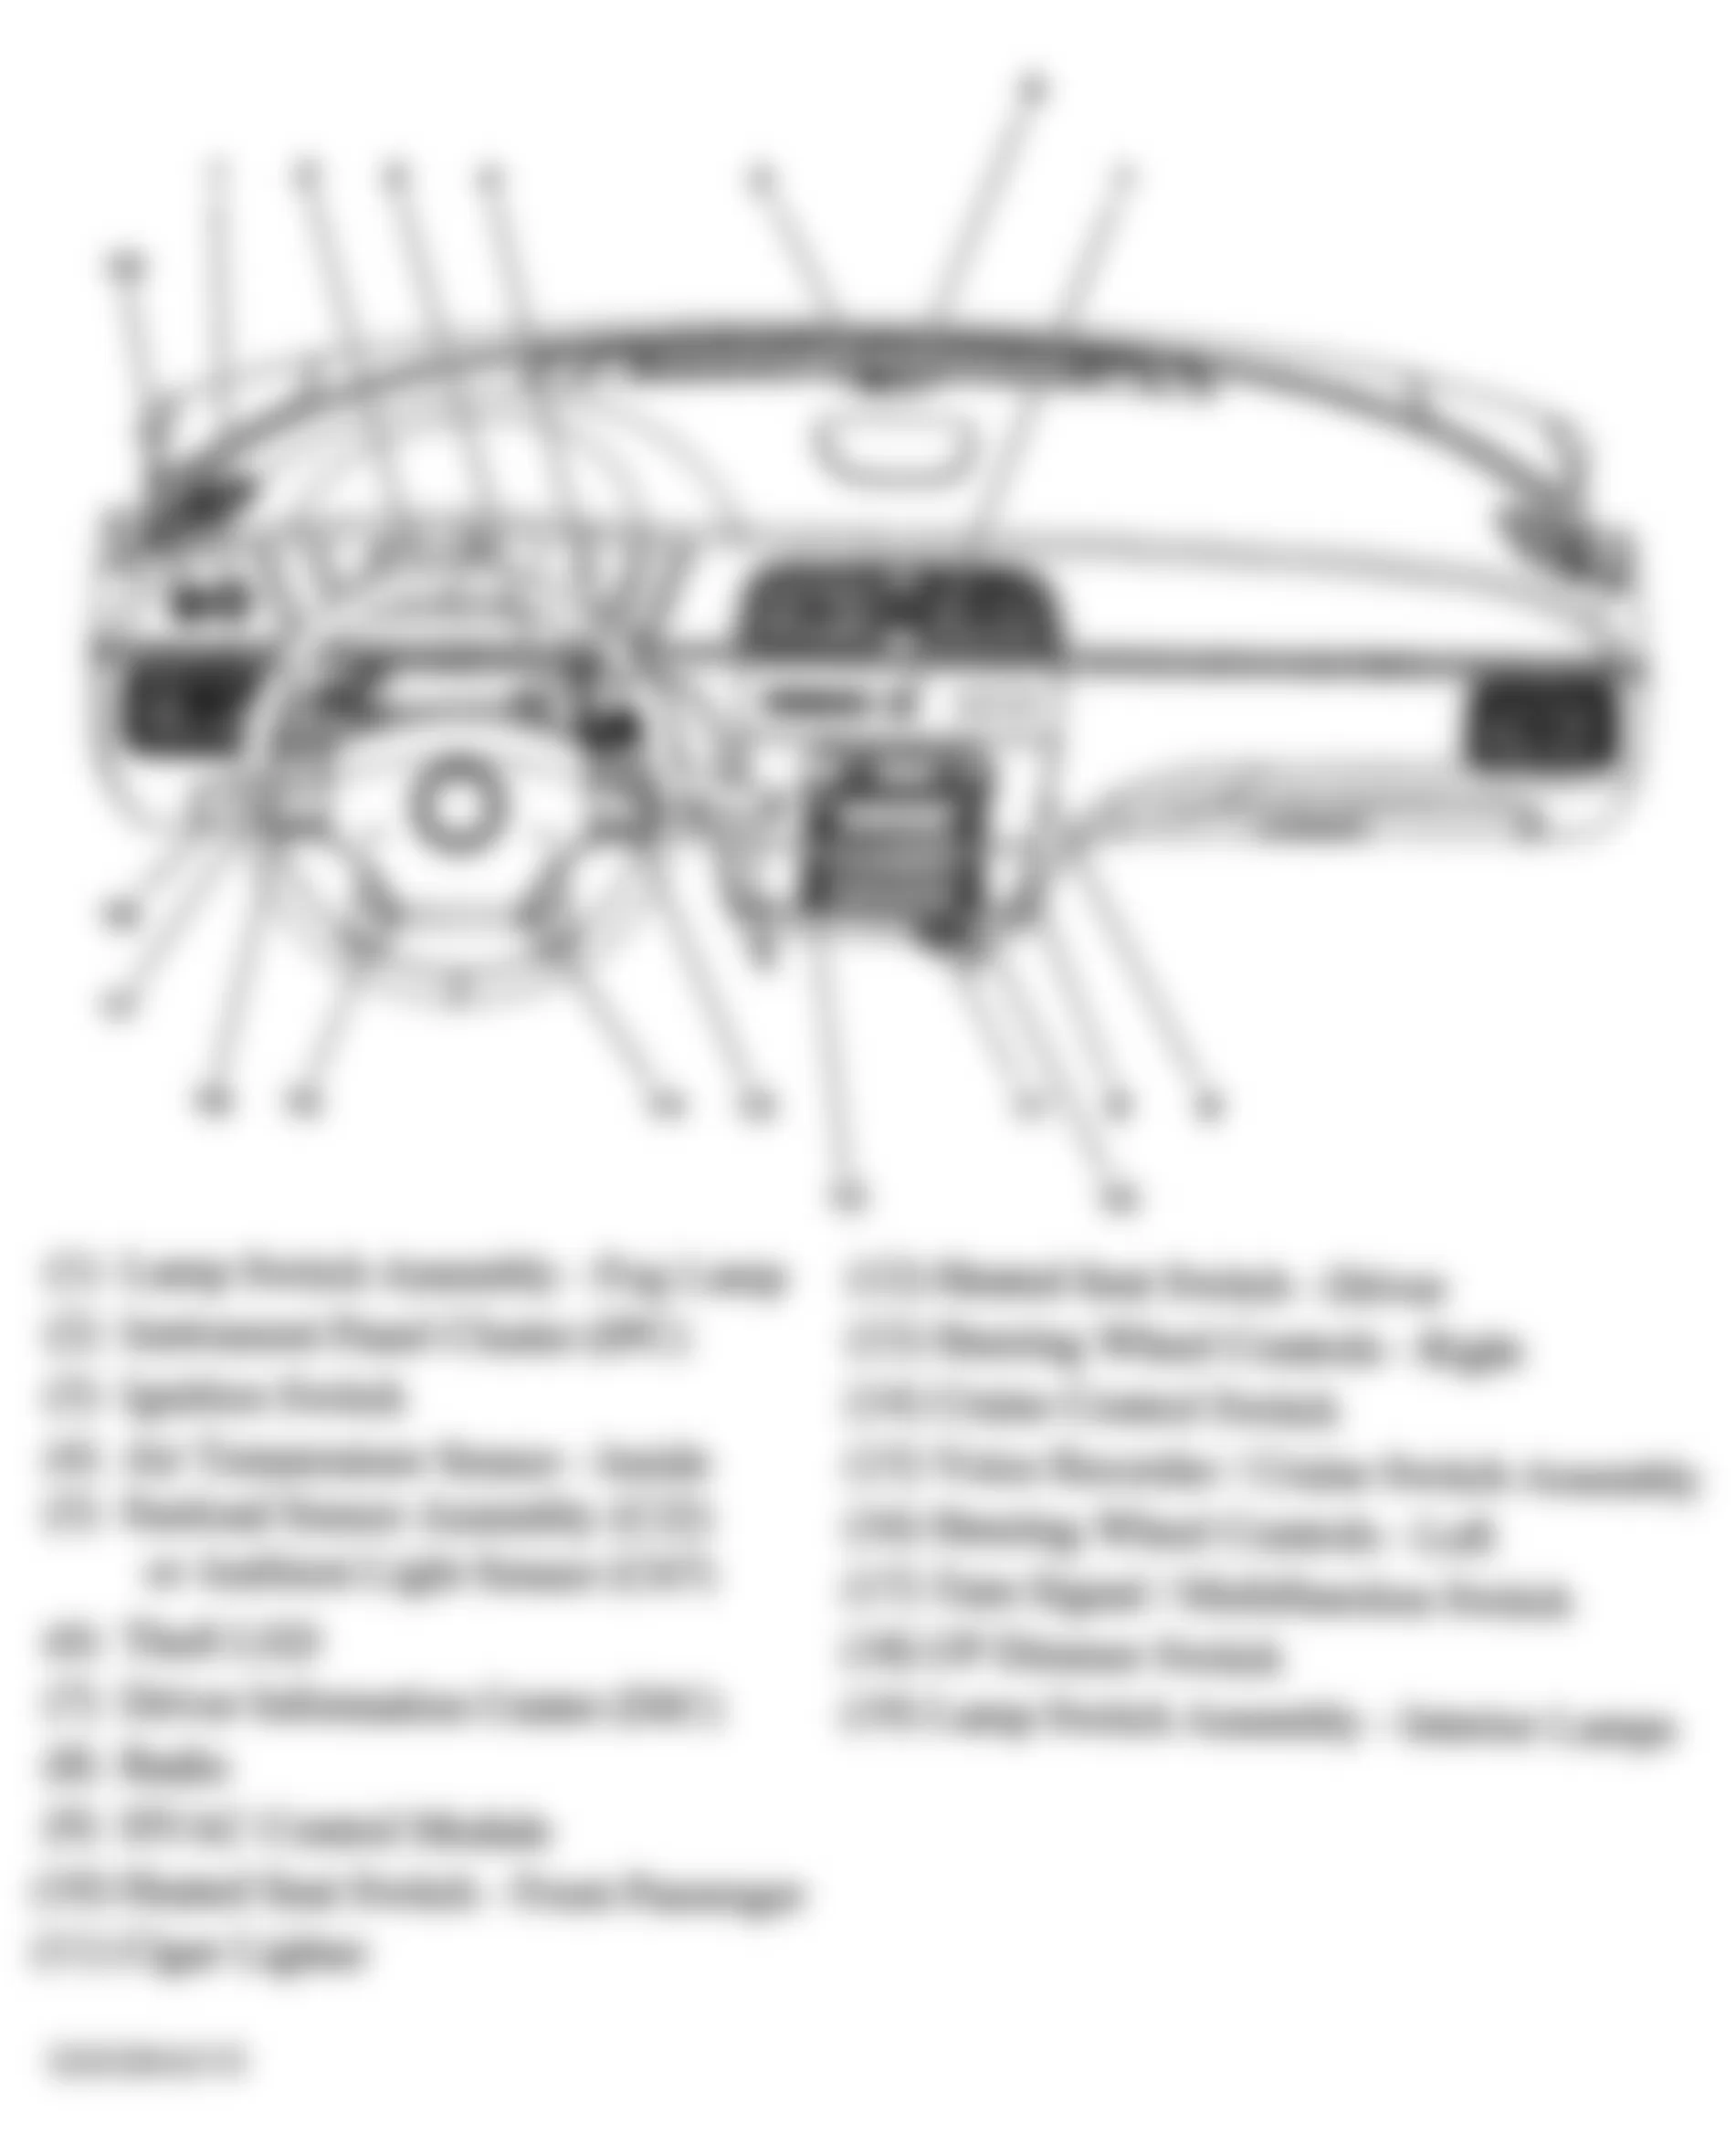 Buick Allure CX 2008 - Component Locations -  Dash